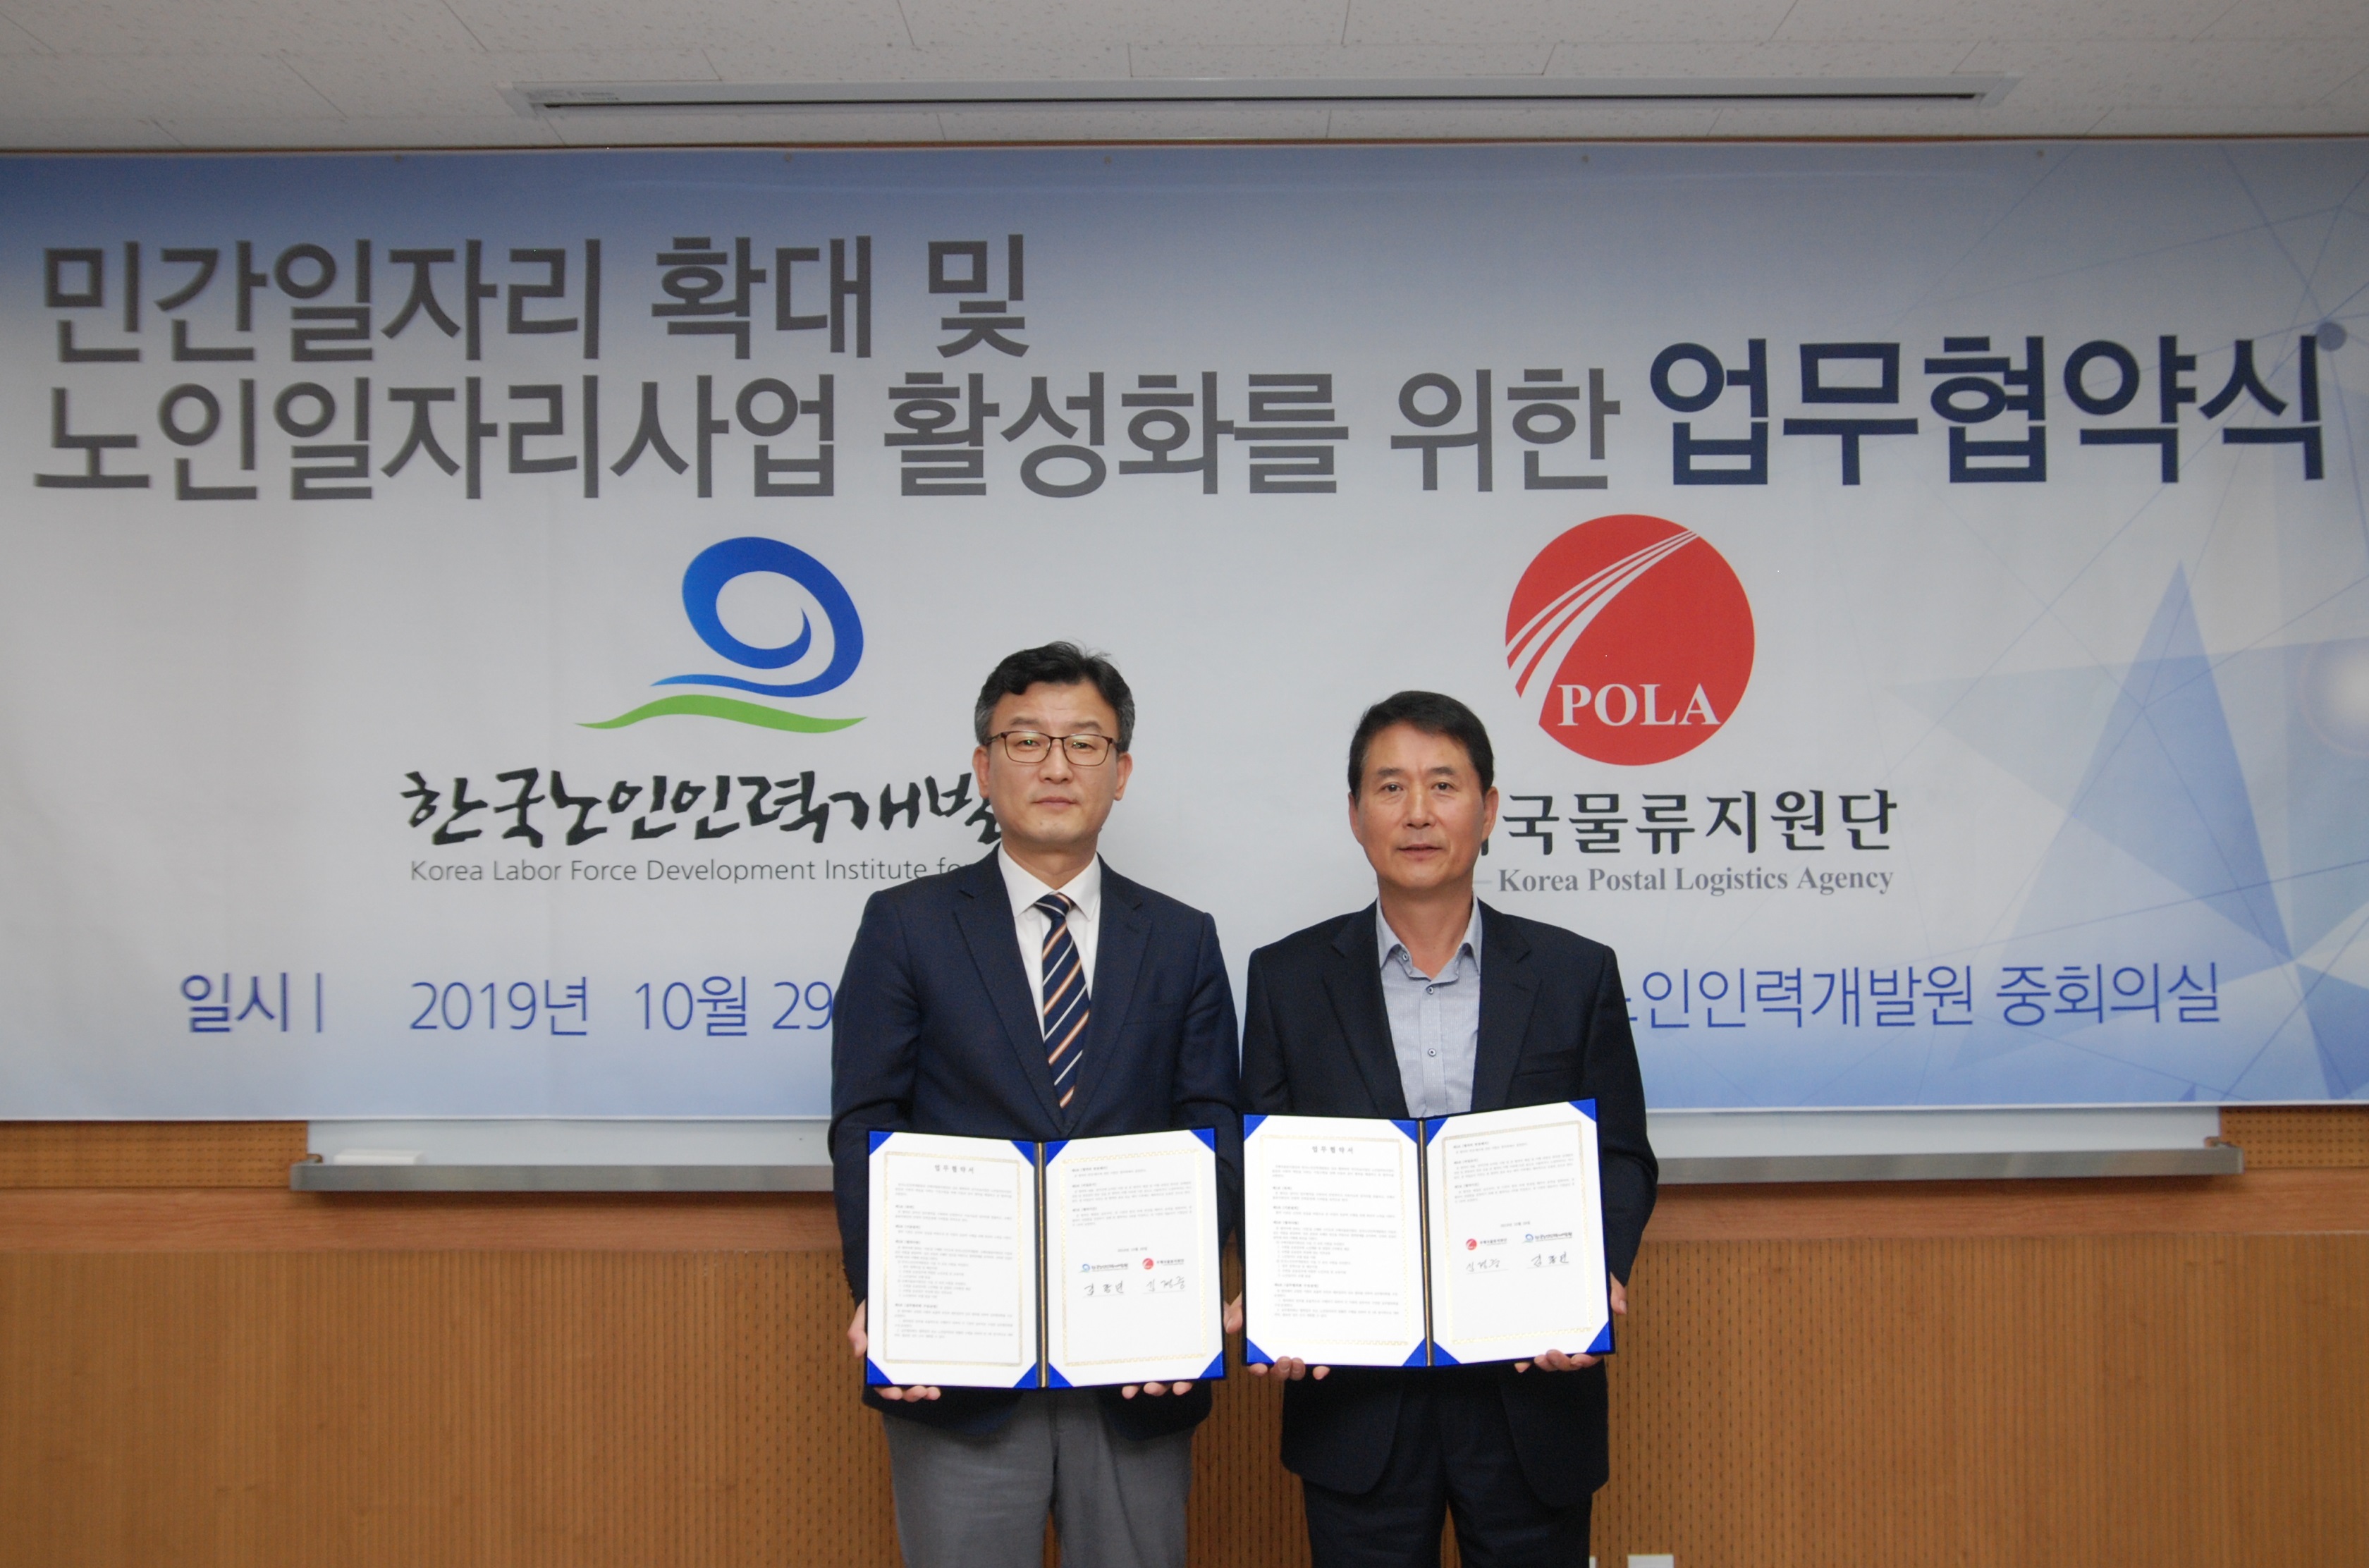 한국노인인력개발원-우체국물류지원단 "우편물 운송업무 관련 노인일자리 창출을 위한 업무협약 체결"